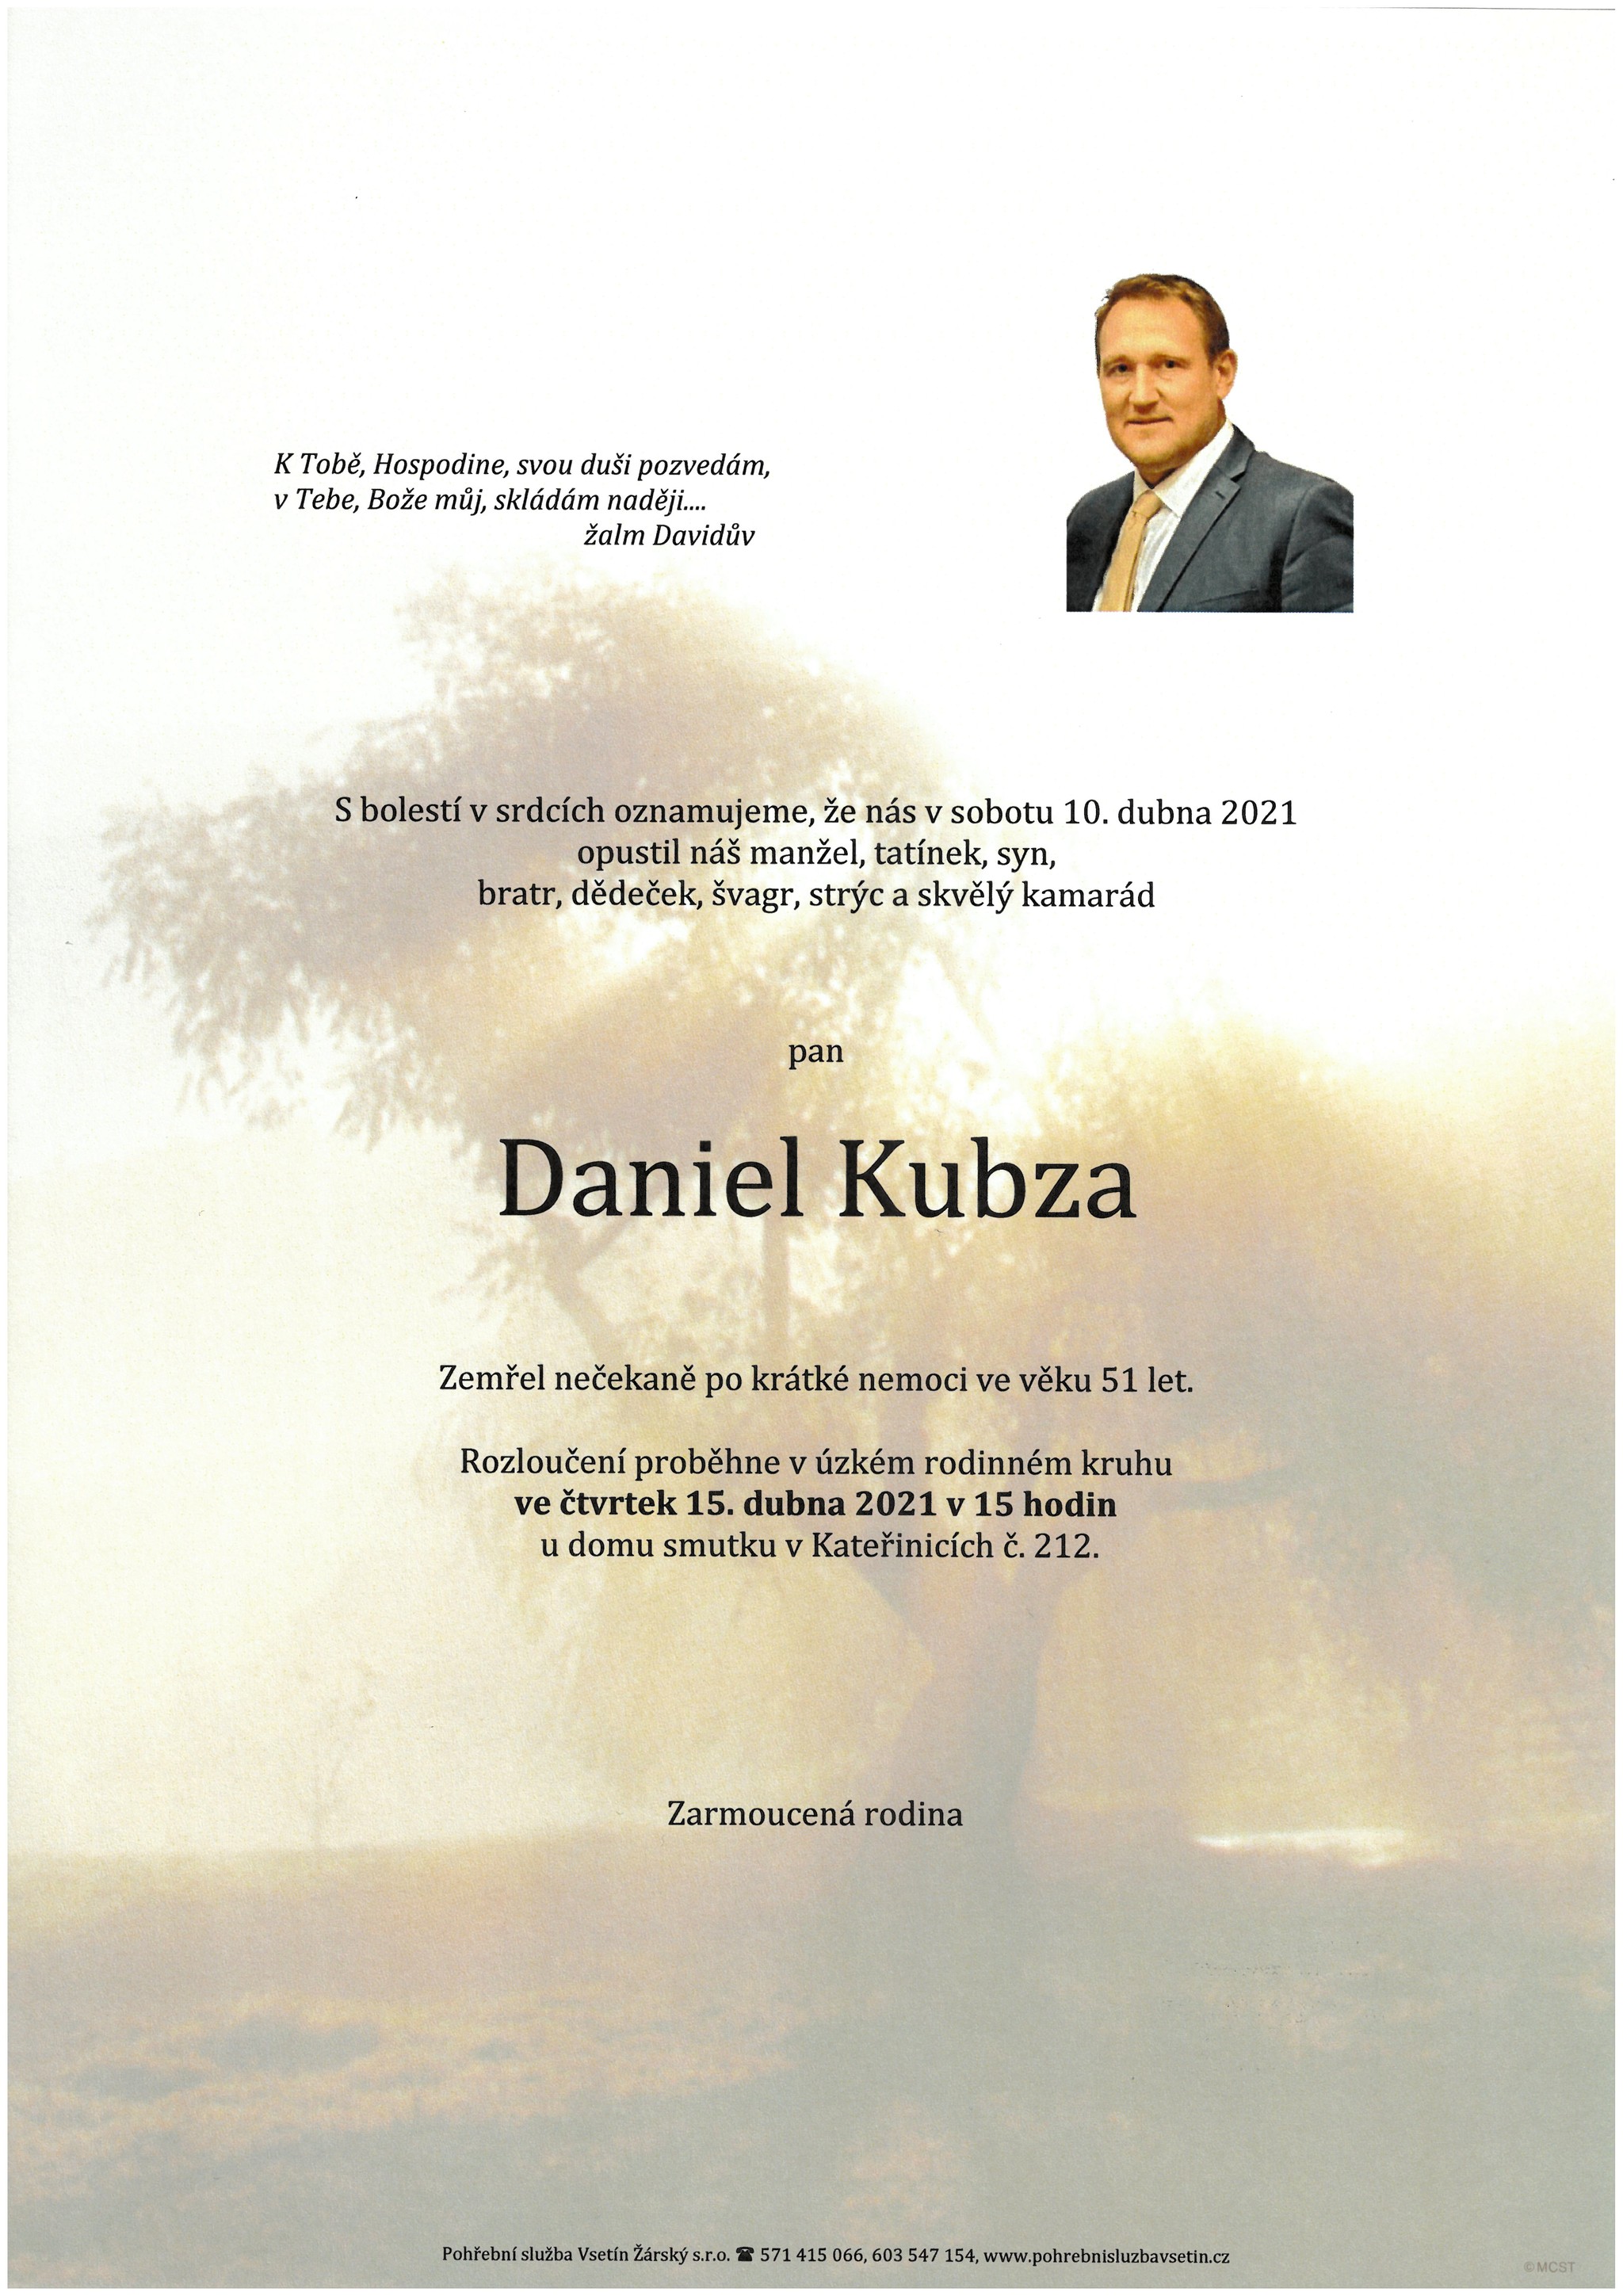 Daniel Kubza